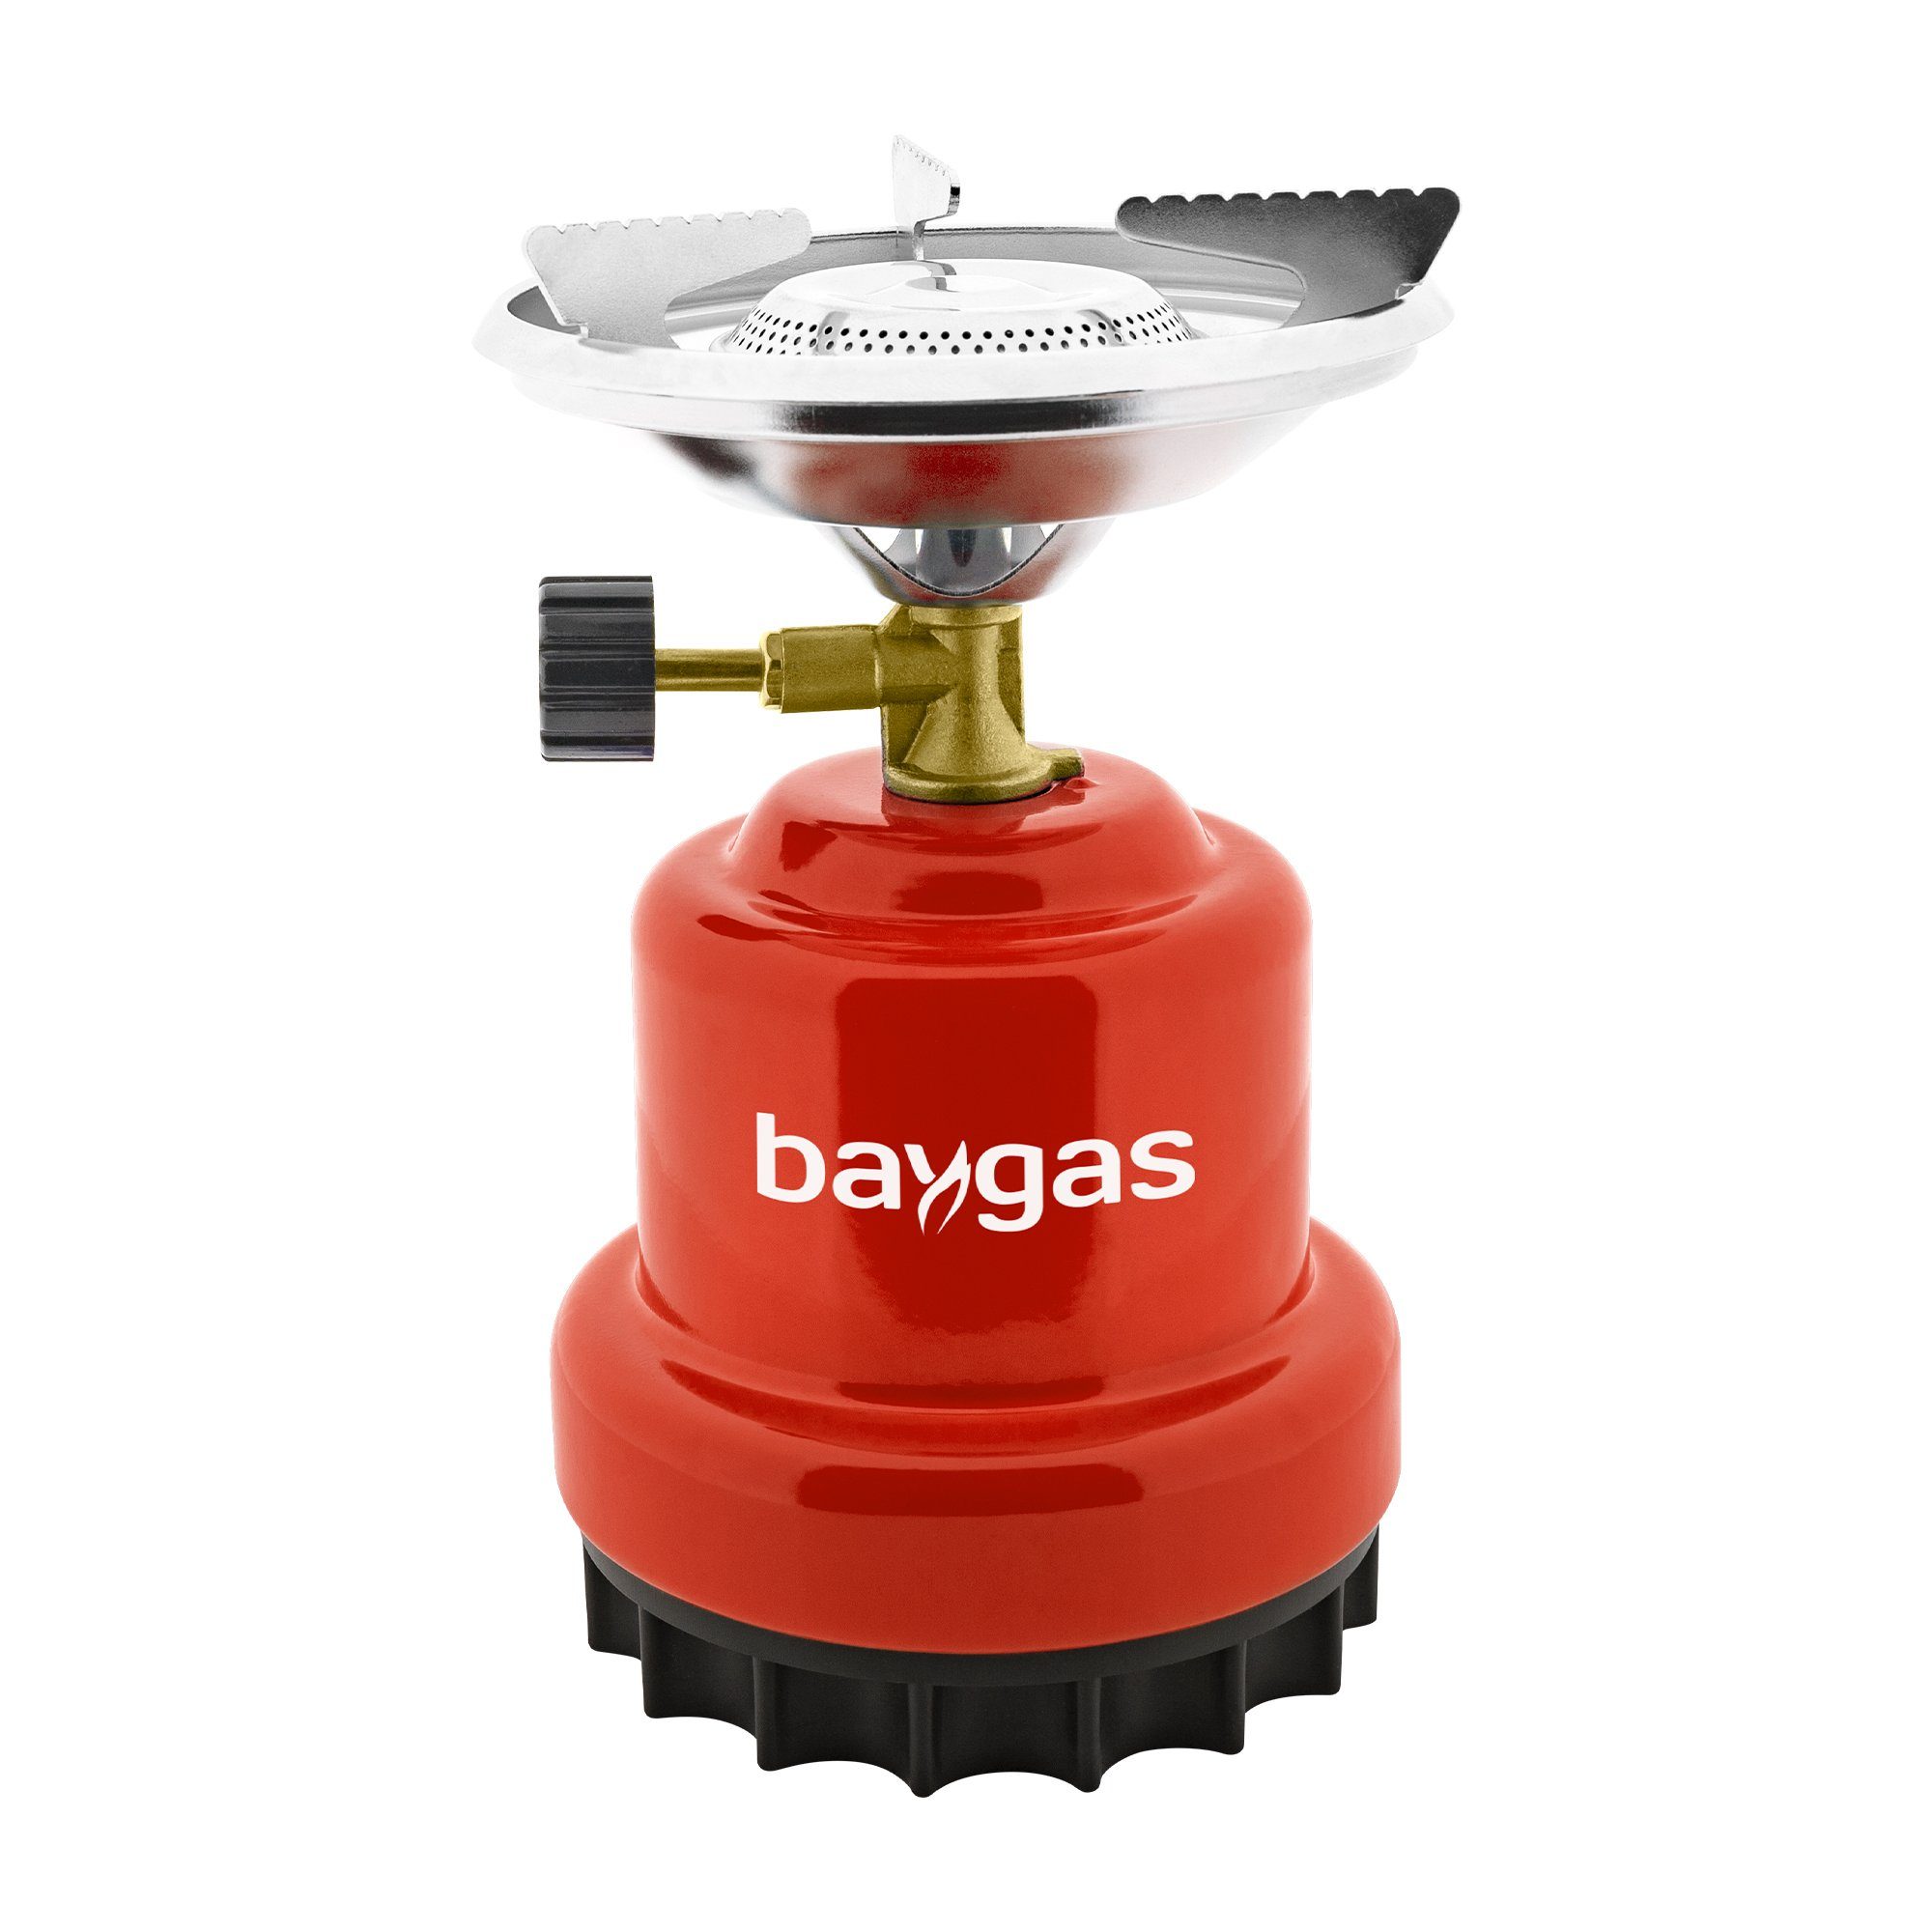 baygas Gaskocher Outdoor für Flammig aus Rot,1- Campingkocher/Gaskocher Metallkörper